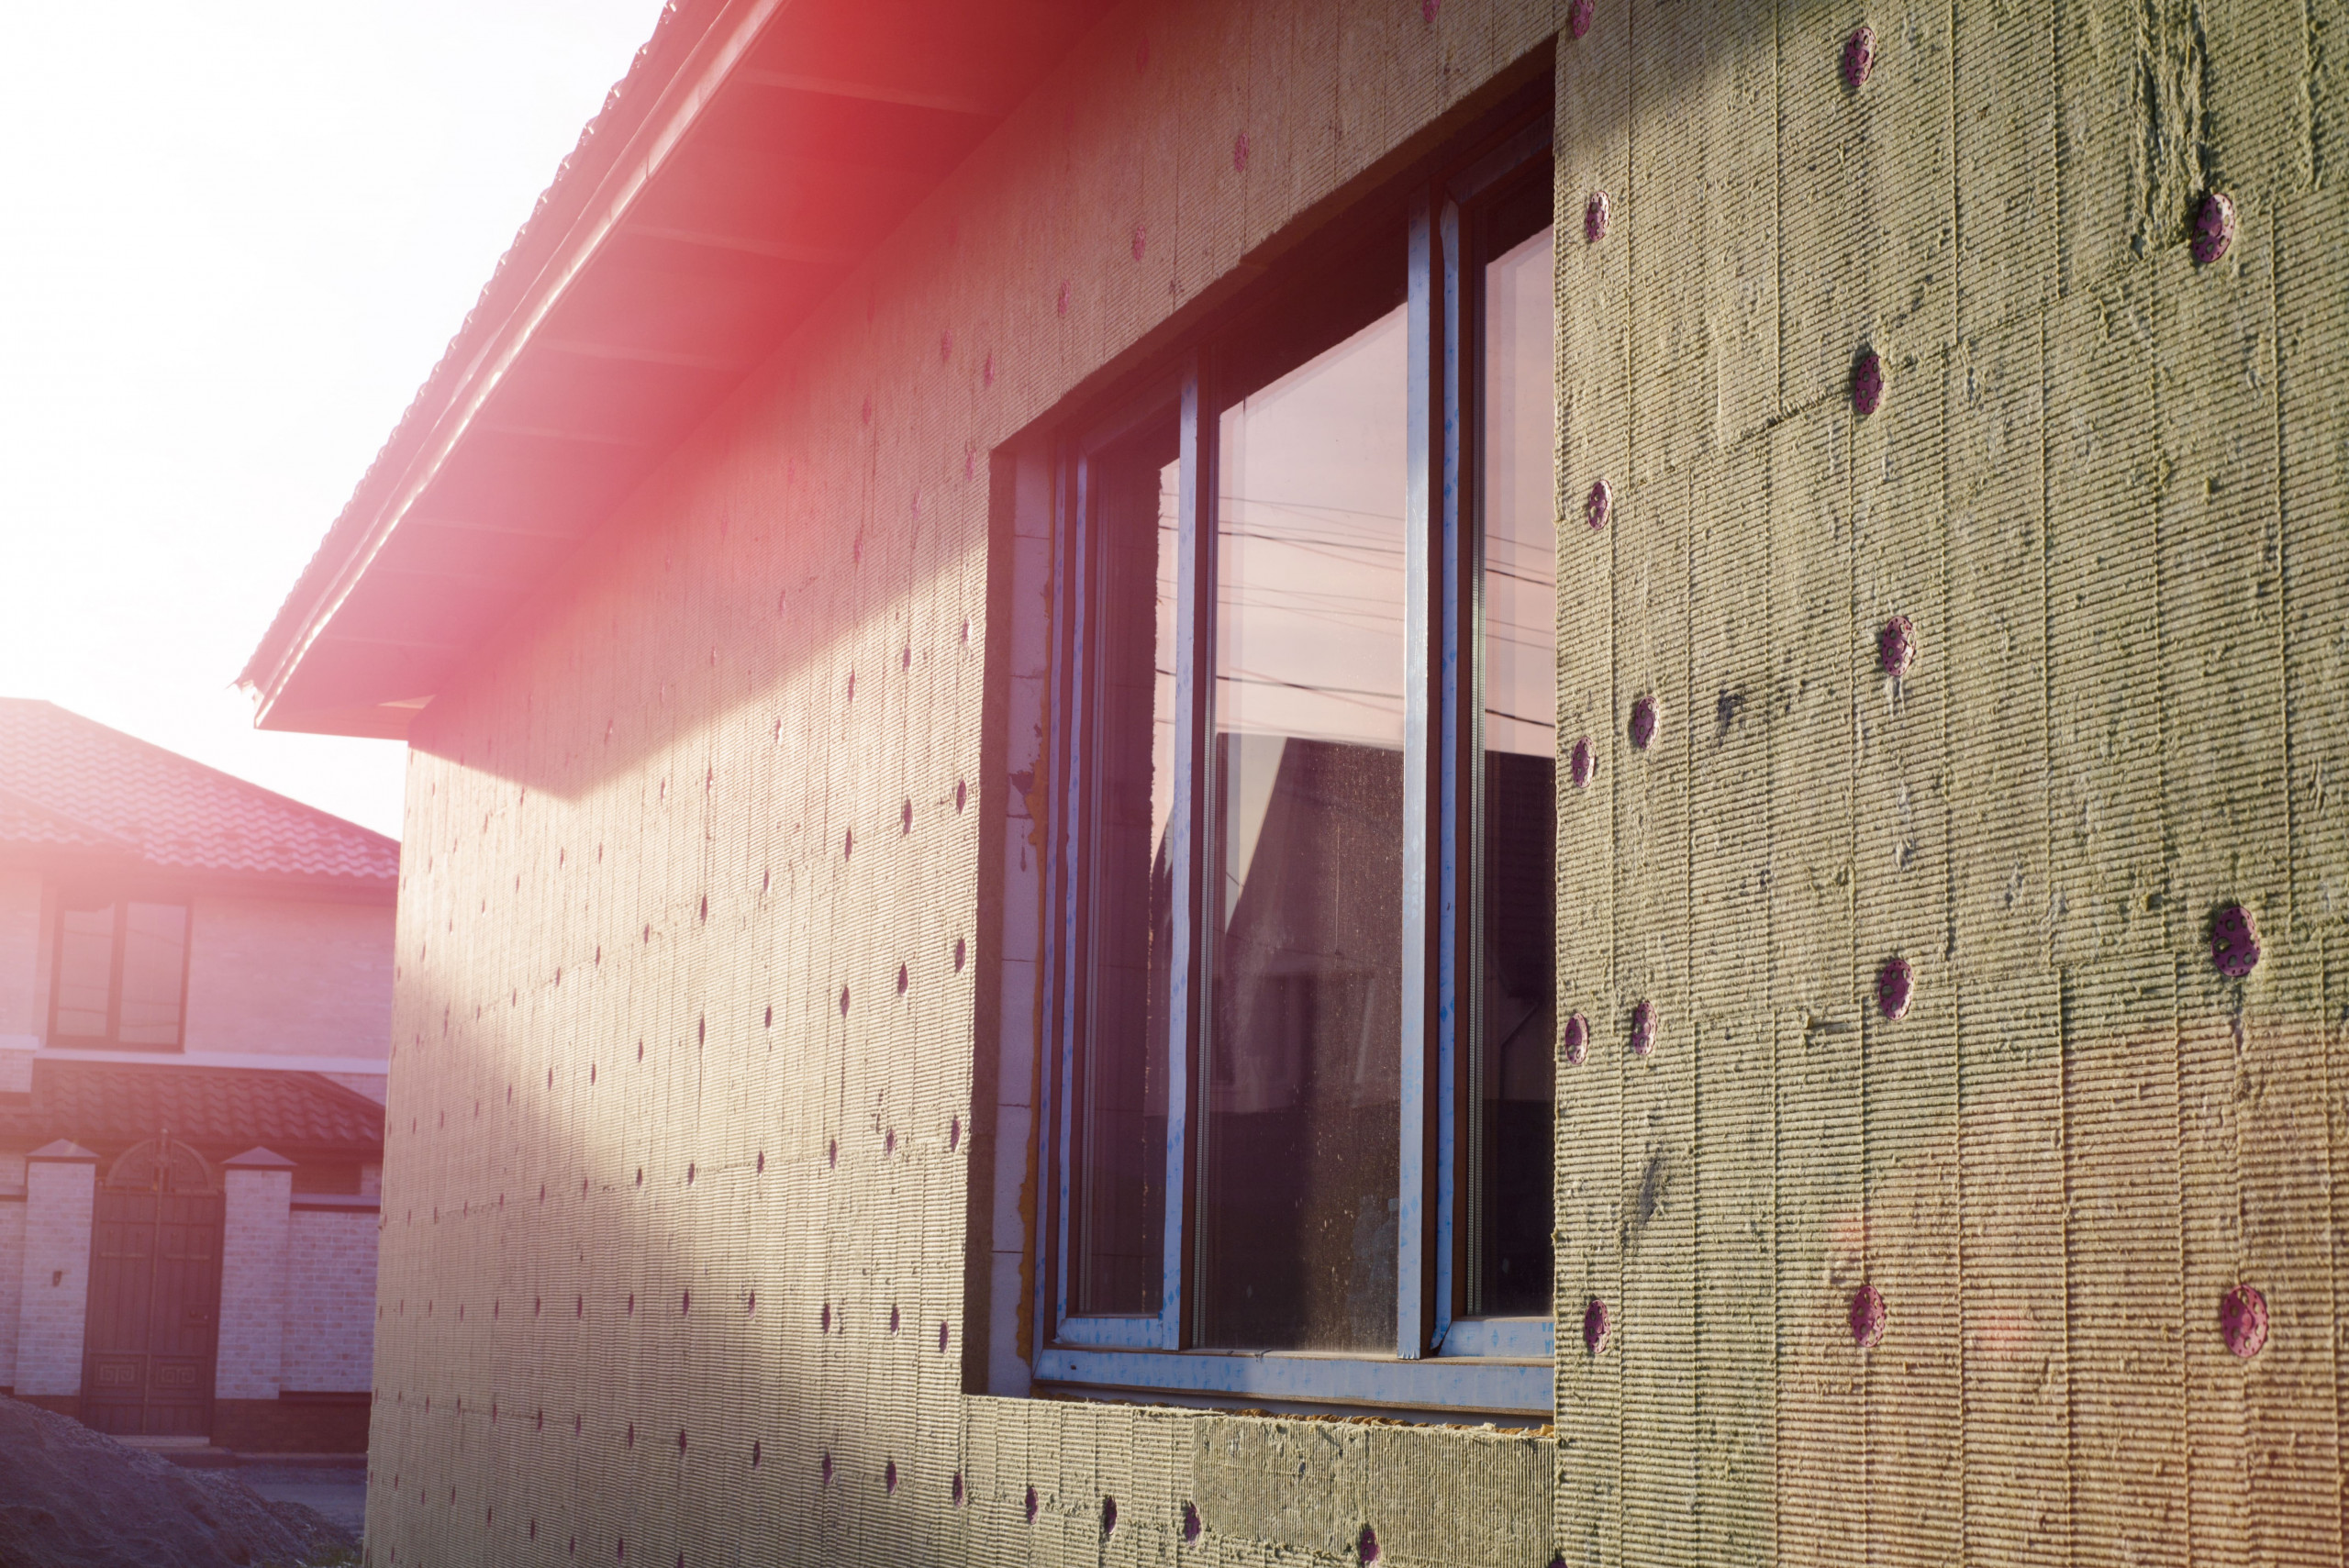 Gedämmte Hausfassade | Mineralwolle | Der Dämmstoff | Foto von Serhii Krot - shutterstock